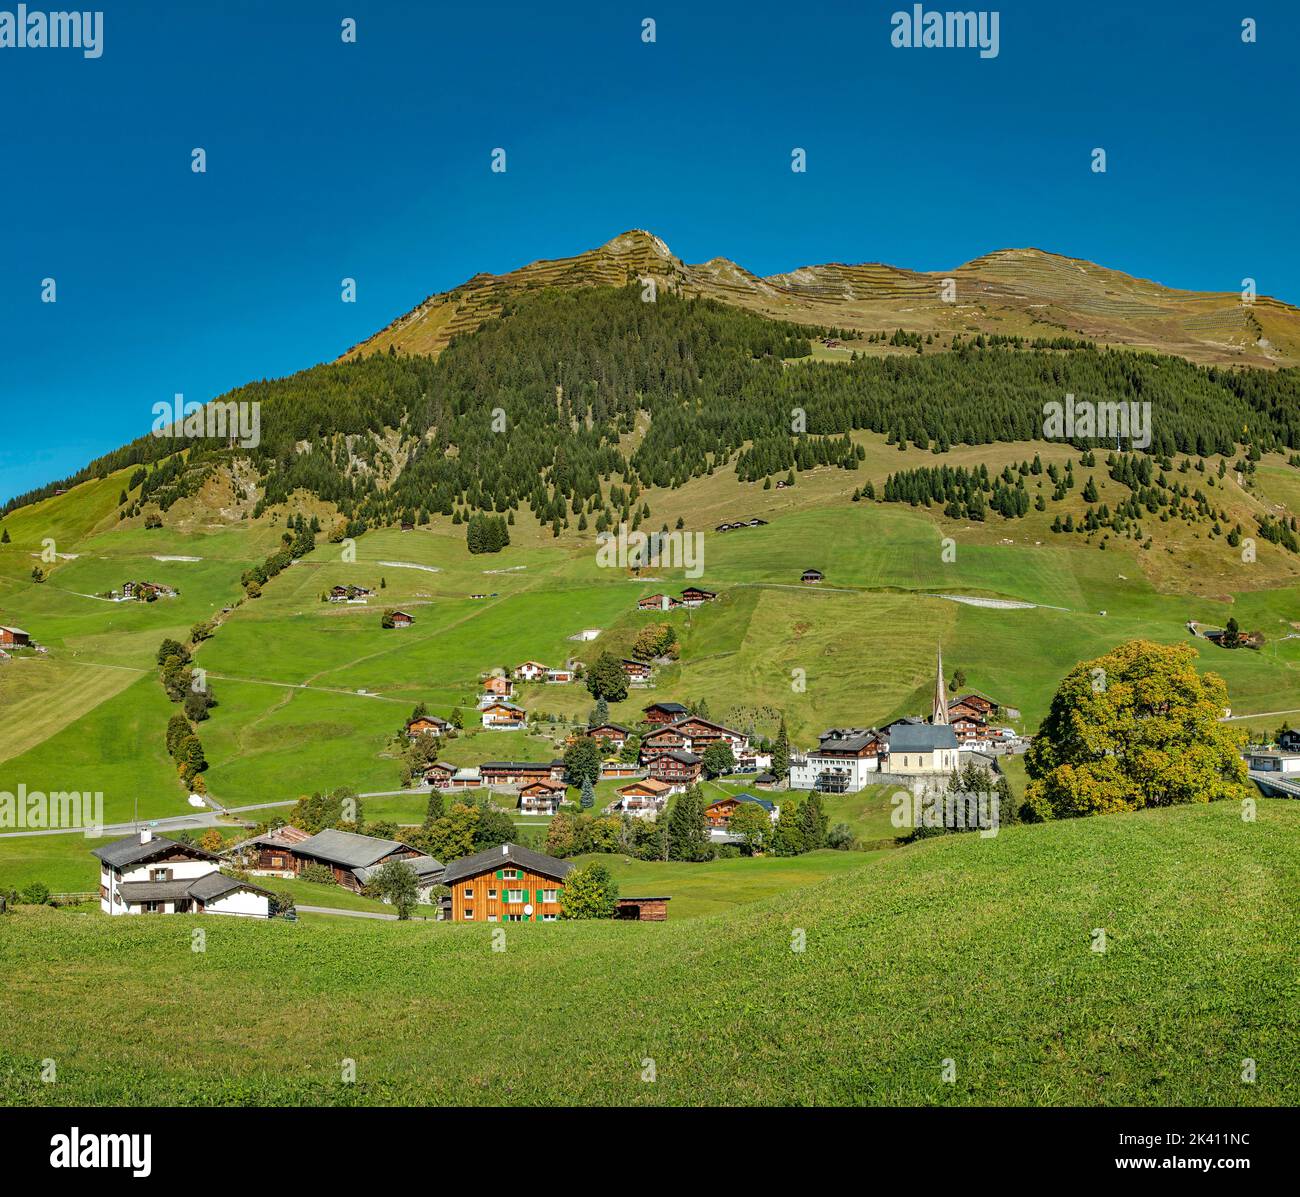 A little village in the Schanielenbach valley, Pratigau *** Local Caption ***  Sankt Antönien,  Graubünden, Switzerland, city, village, field, meadow, Stock Photo